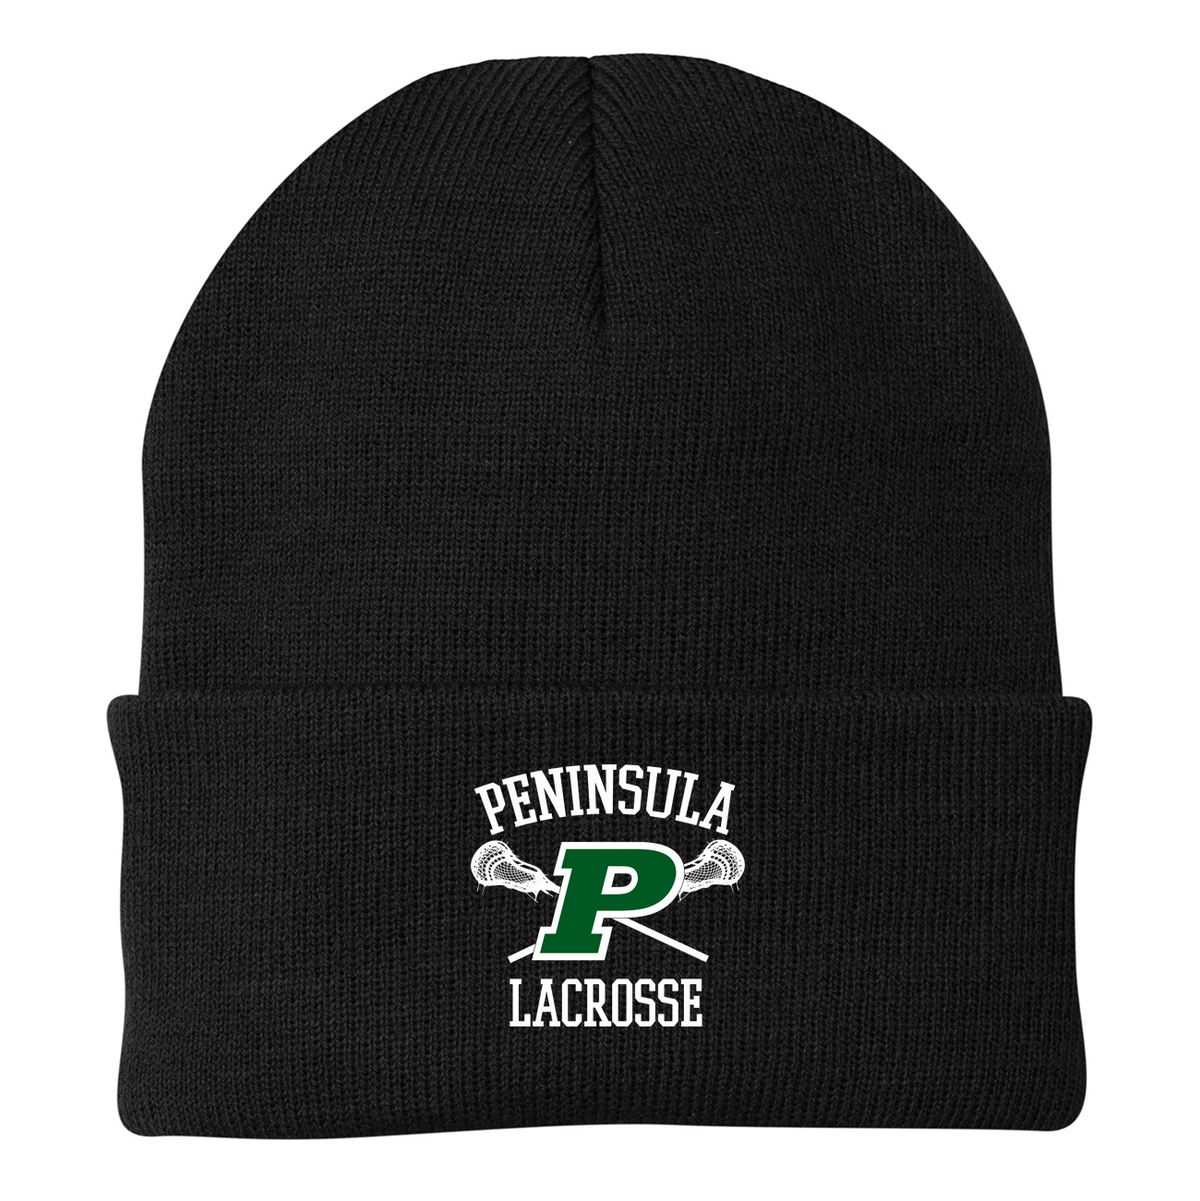 Peninsula Lacrosse Knit Beanie